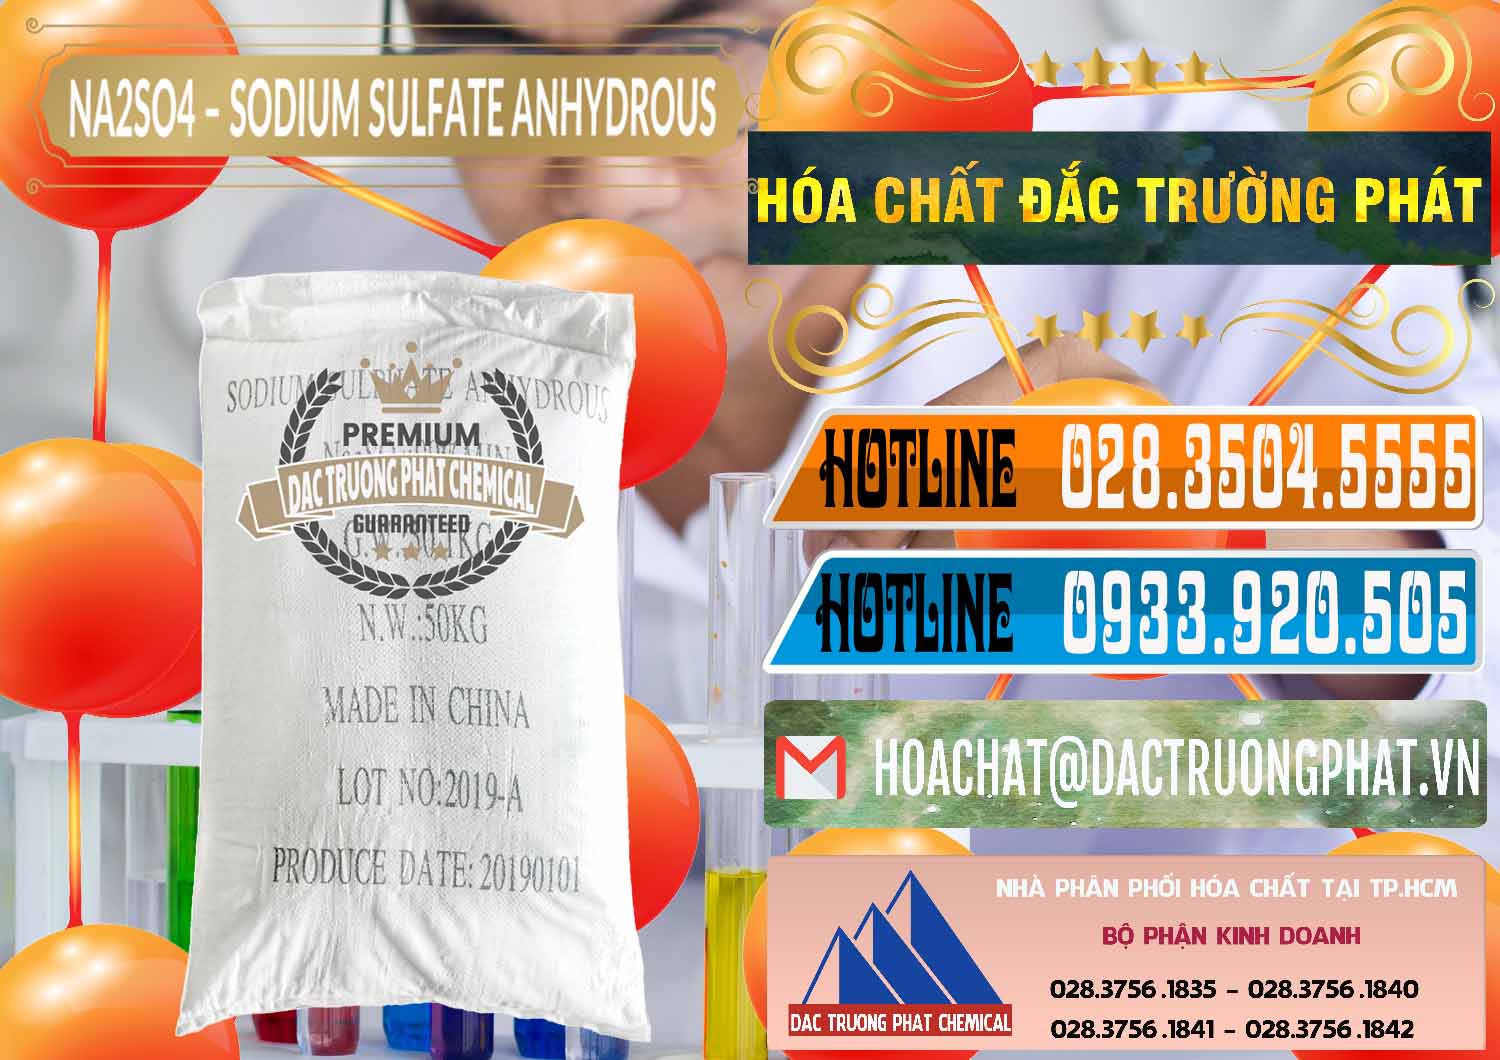 Cty chuyên nhập khẩu ( bán ) Sodium Sulphate - Muối Sunfat Na2SO4 PH 6-8 Trung Quốc China - 0099 - Công ty bán _ phân phối hóa chất tại TP.HCM - stmp.net